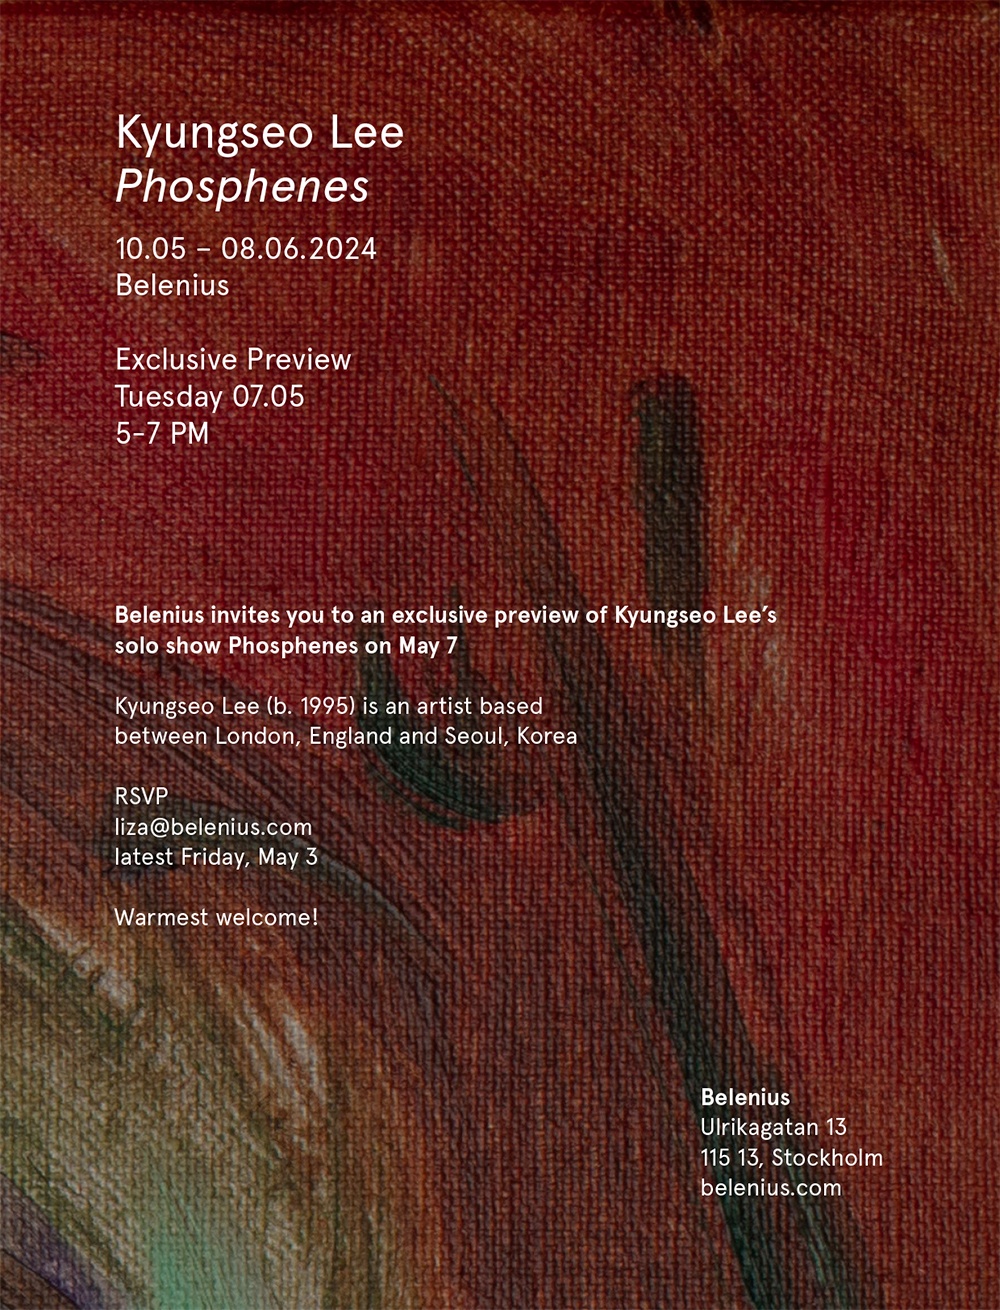 Invitation - Belenius presents Kyungseo Lee "Phosphenes"